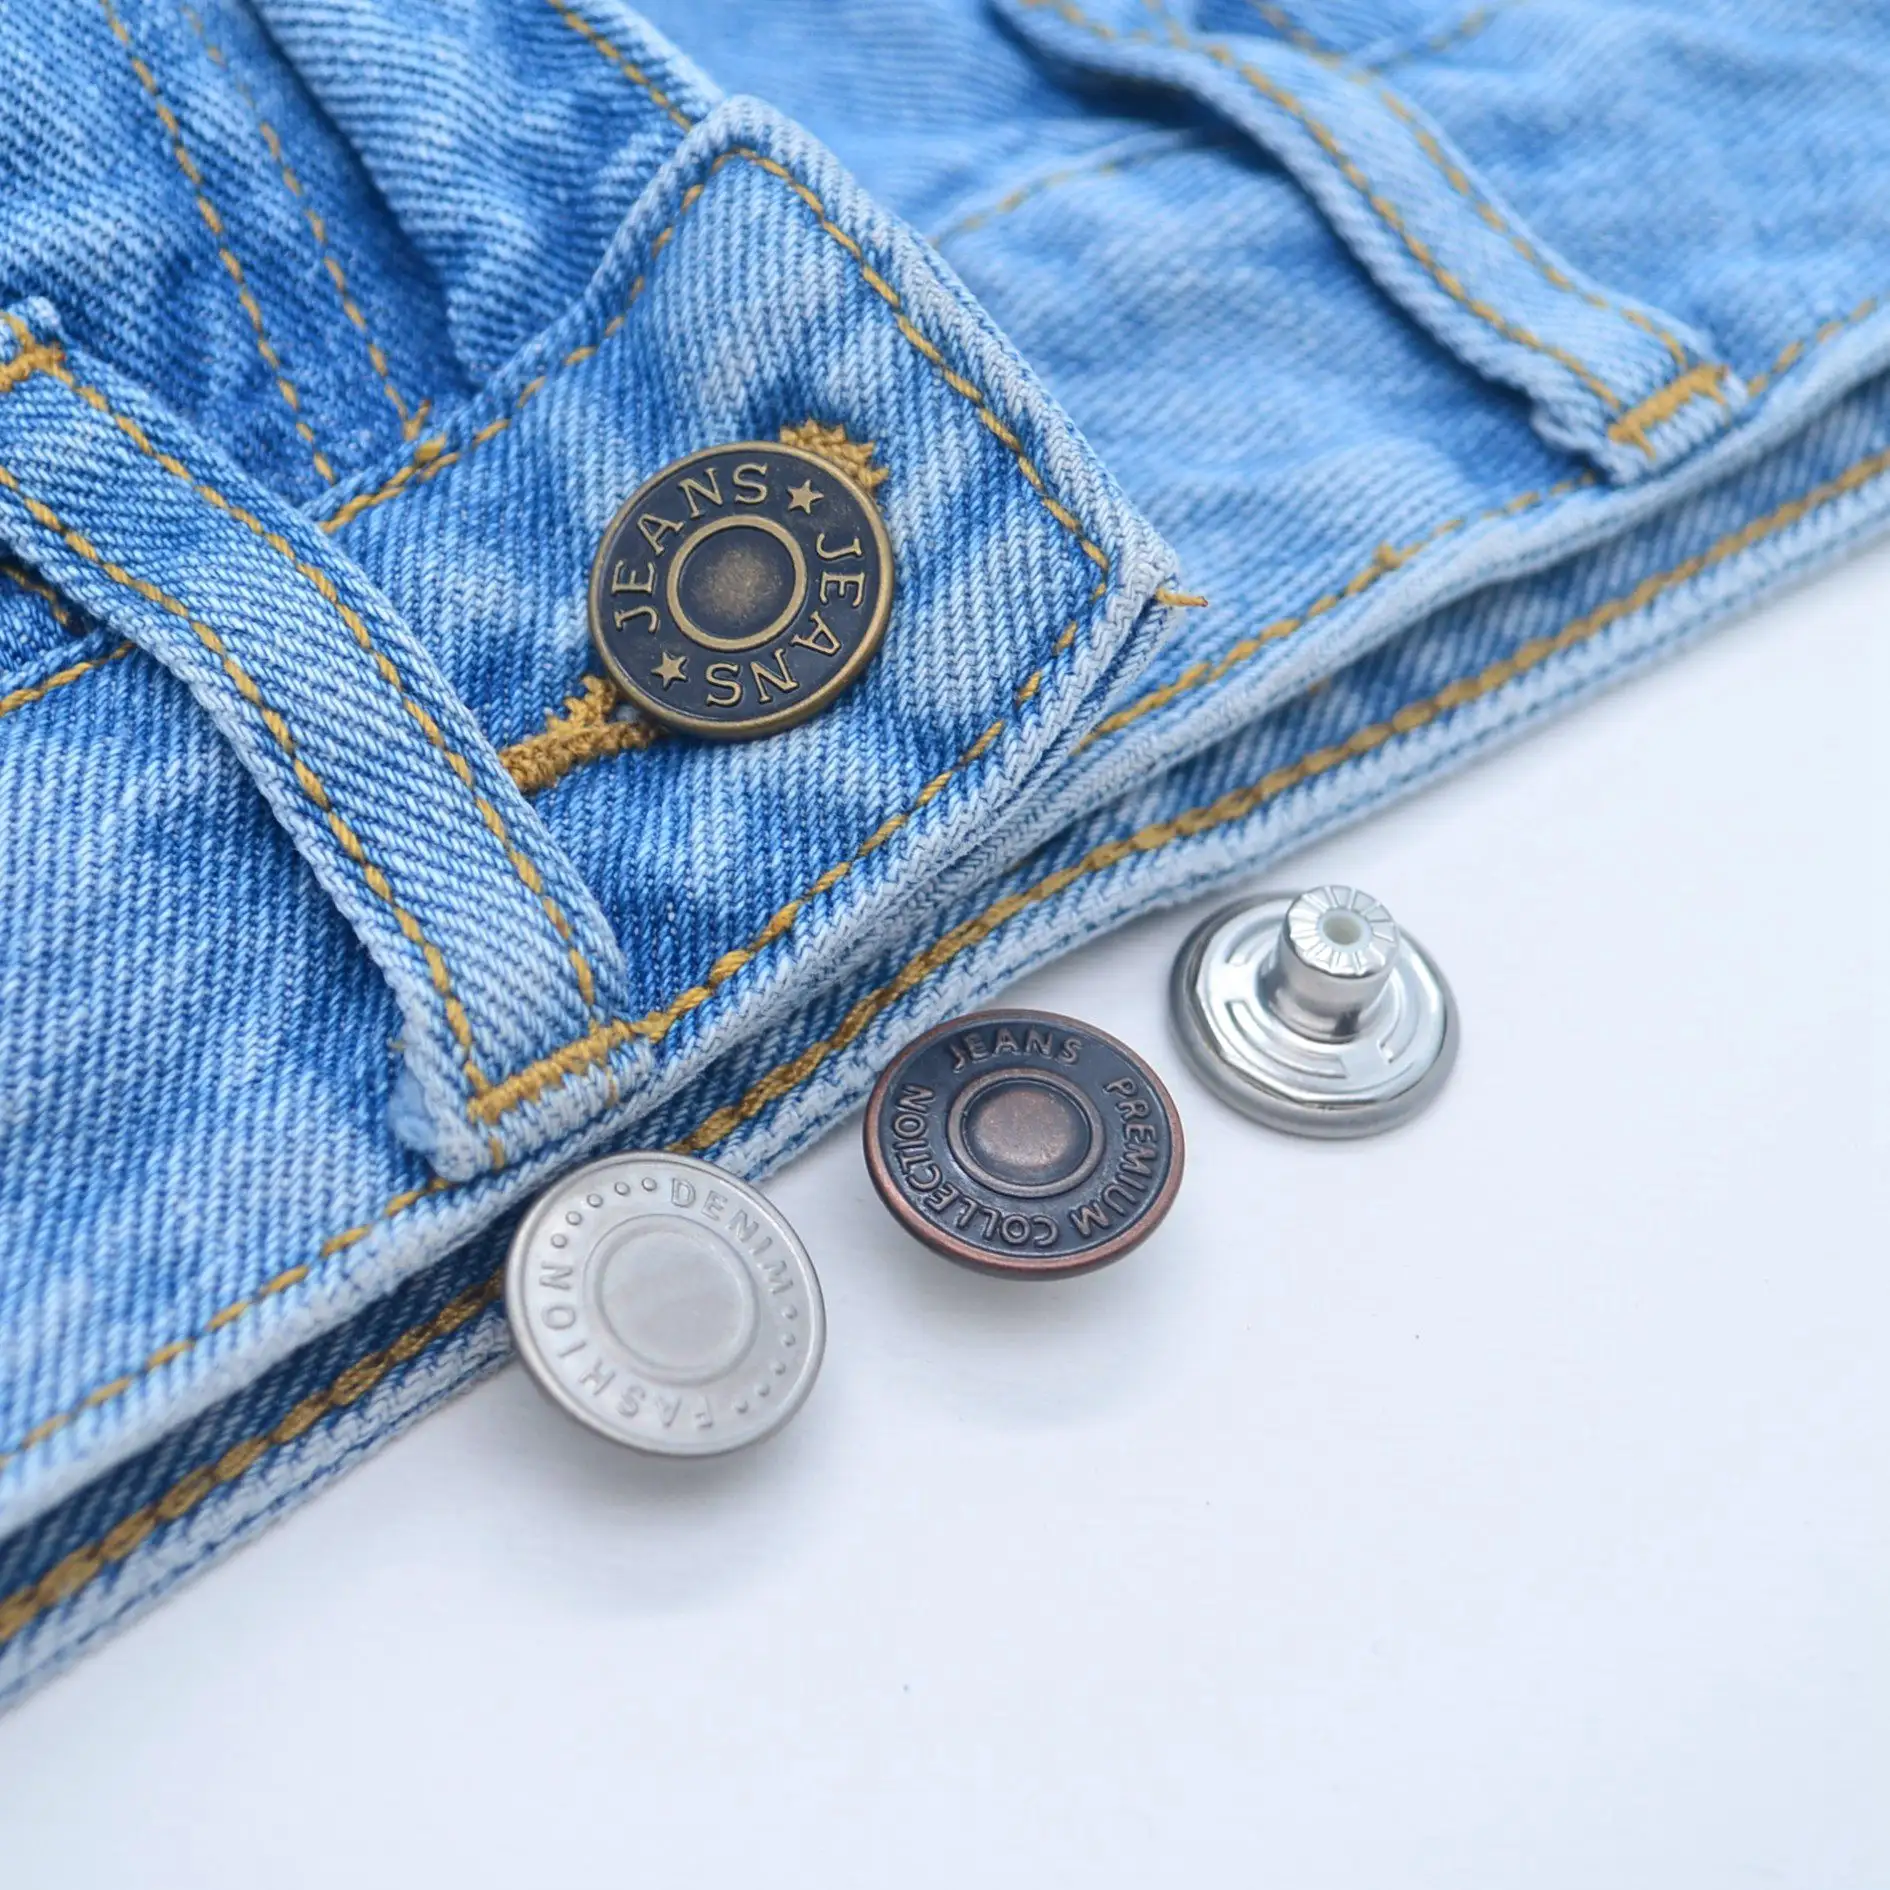 Fashion Lion Head Sewing Button Round Shaped Metal Button Set for Men Women Blazer Uniform Coat Silver, 20mm 10PCS Clothes Buttons Shirt Suit and Jacket